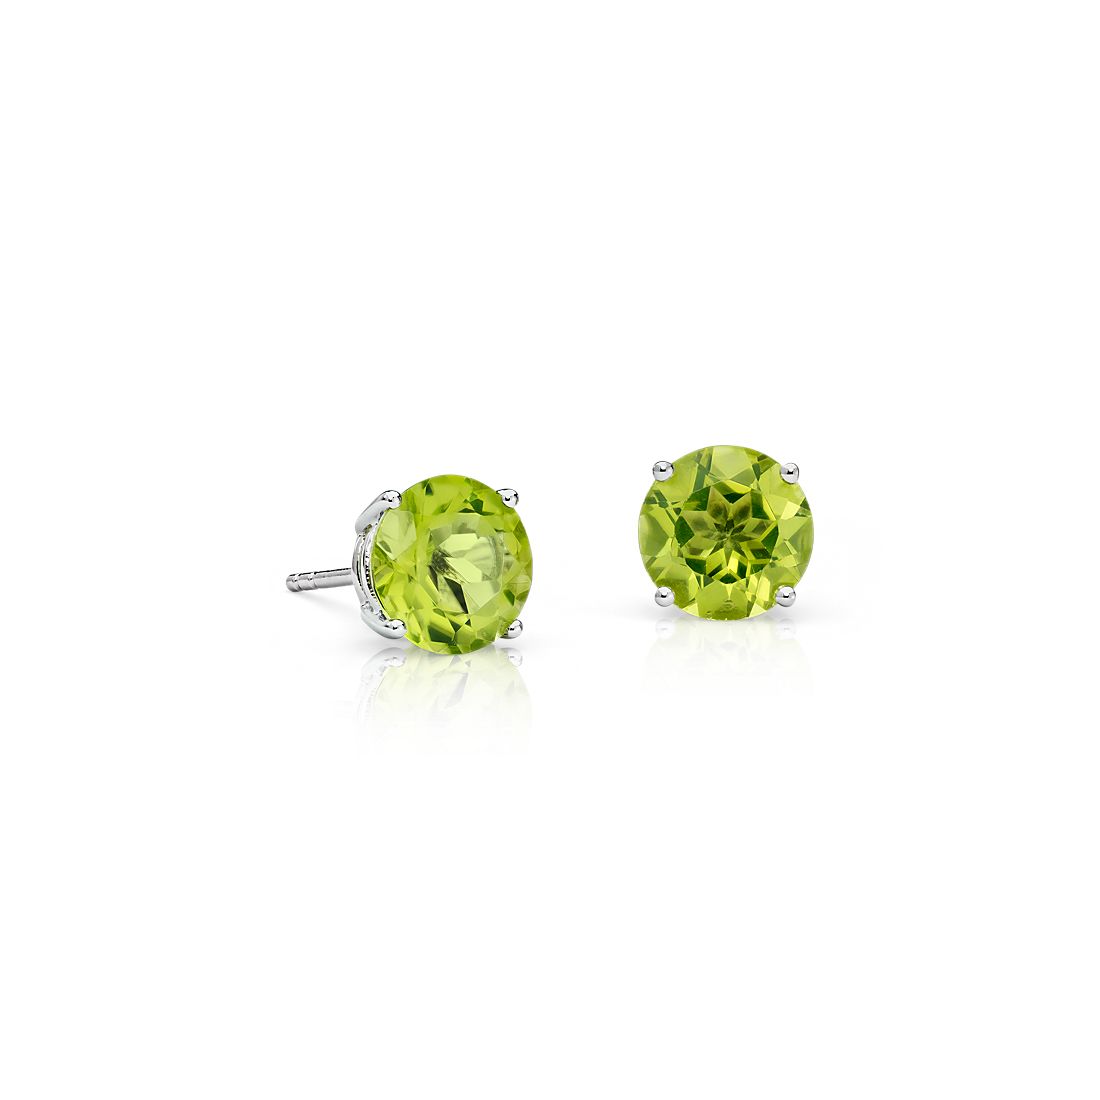 Details about   Green peridot oval cut silver stud earrings 